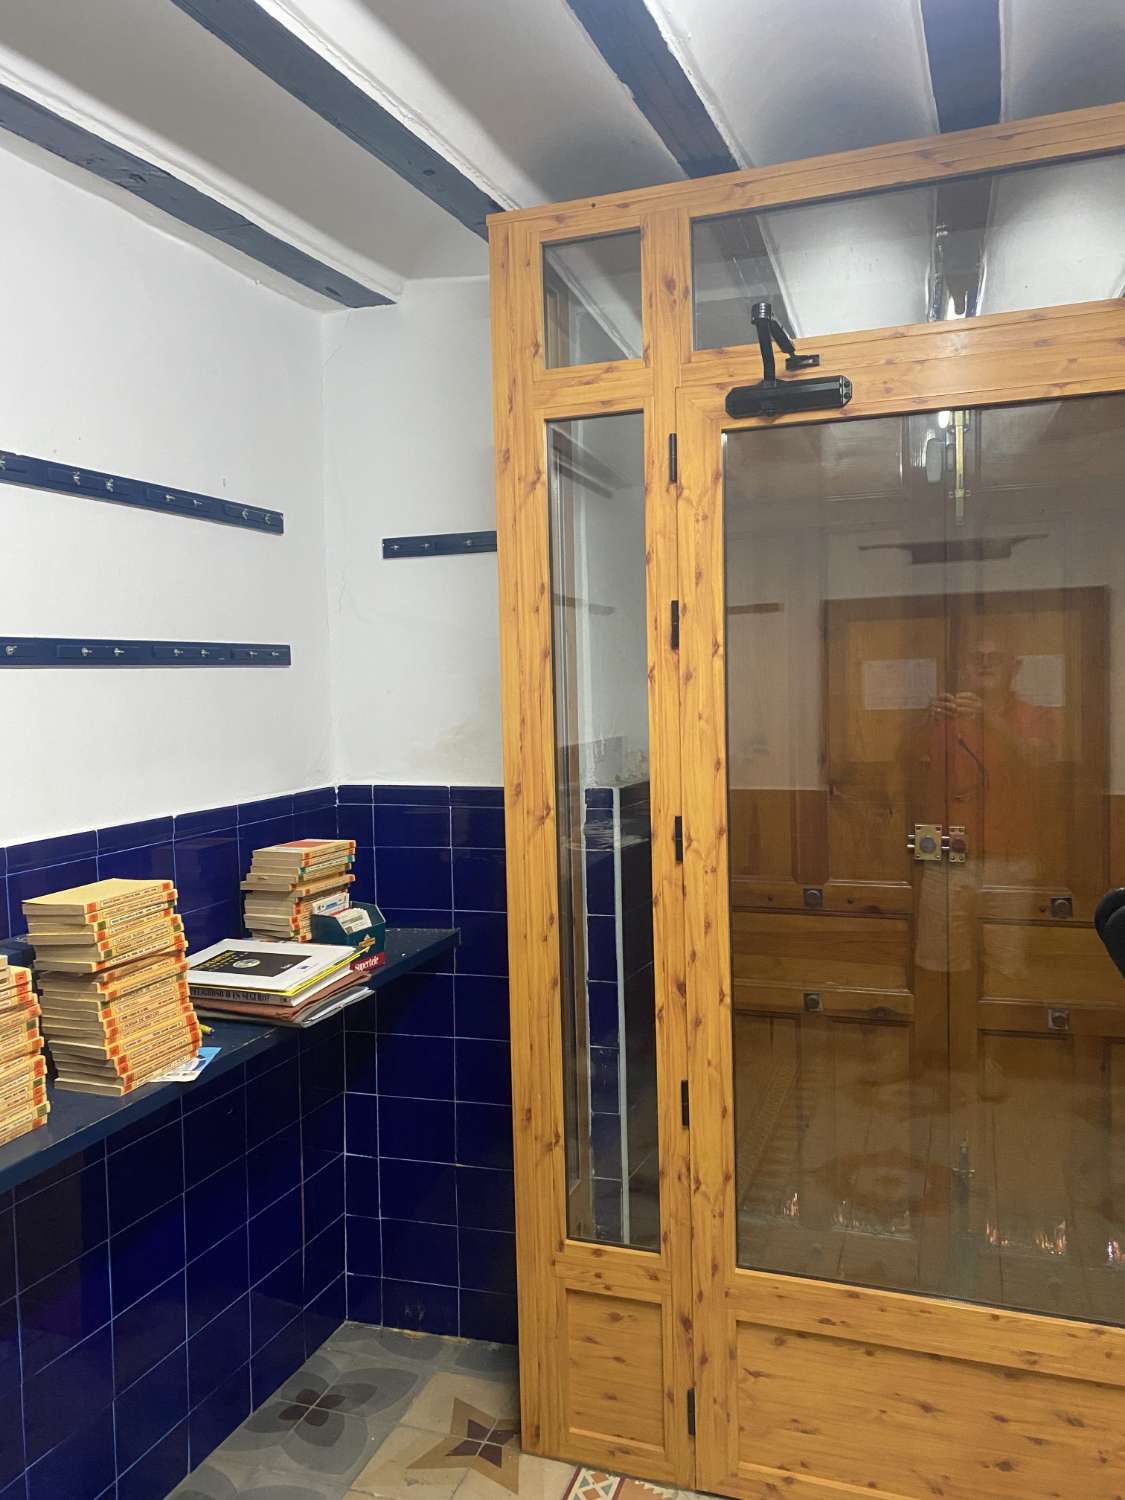 Maison de 9 chambres et 2 salles de bain pour la réforme à Velez-Rubio